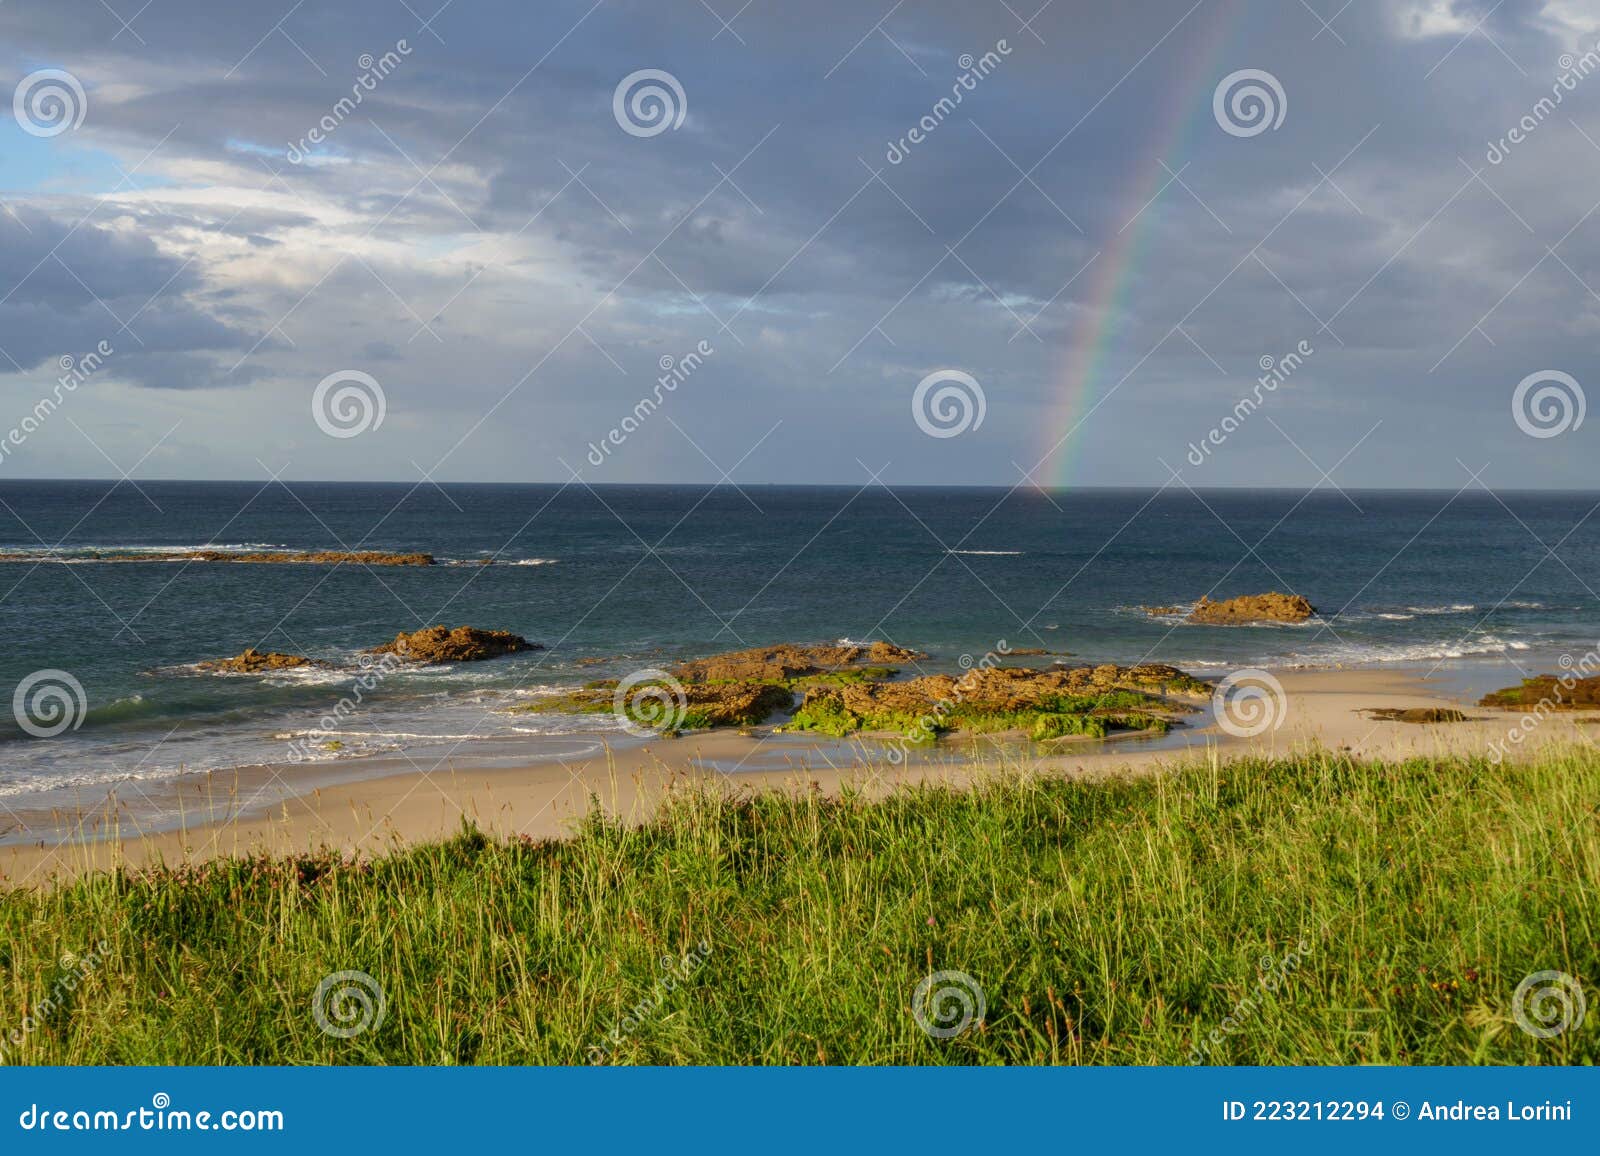 rainbow in sea from playa llas in foz, lugo, galicia. beautiful colorful landscape